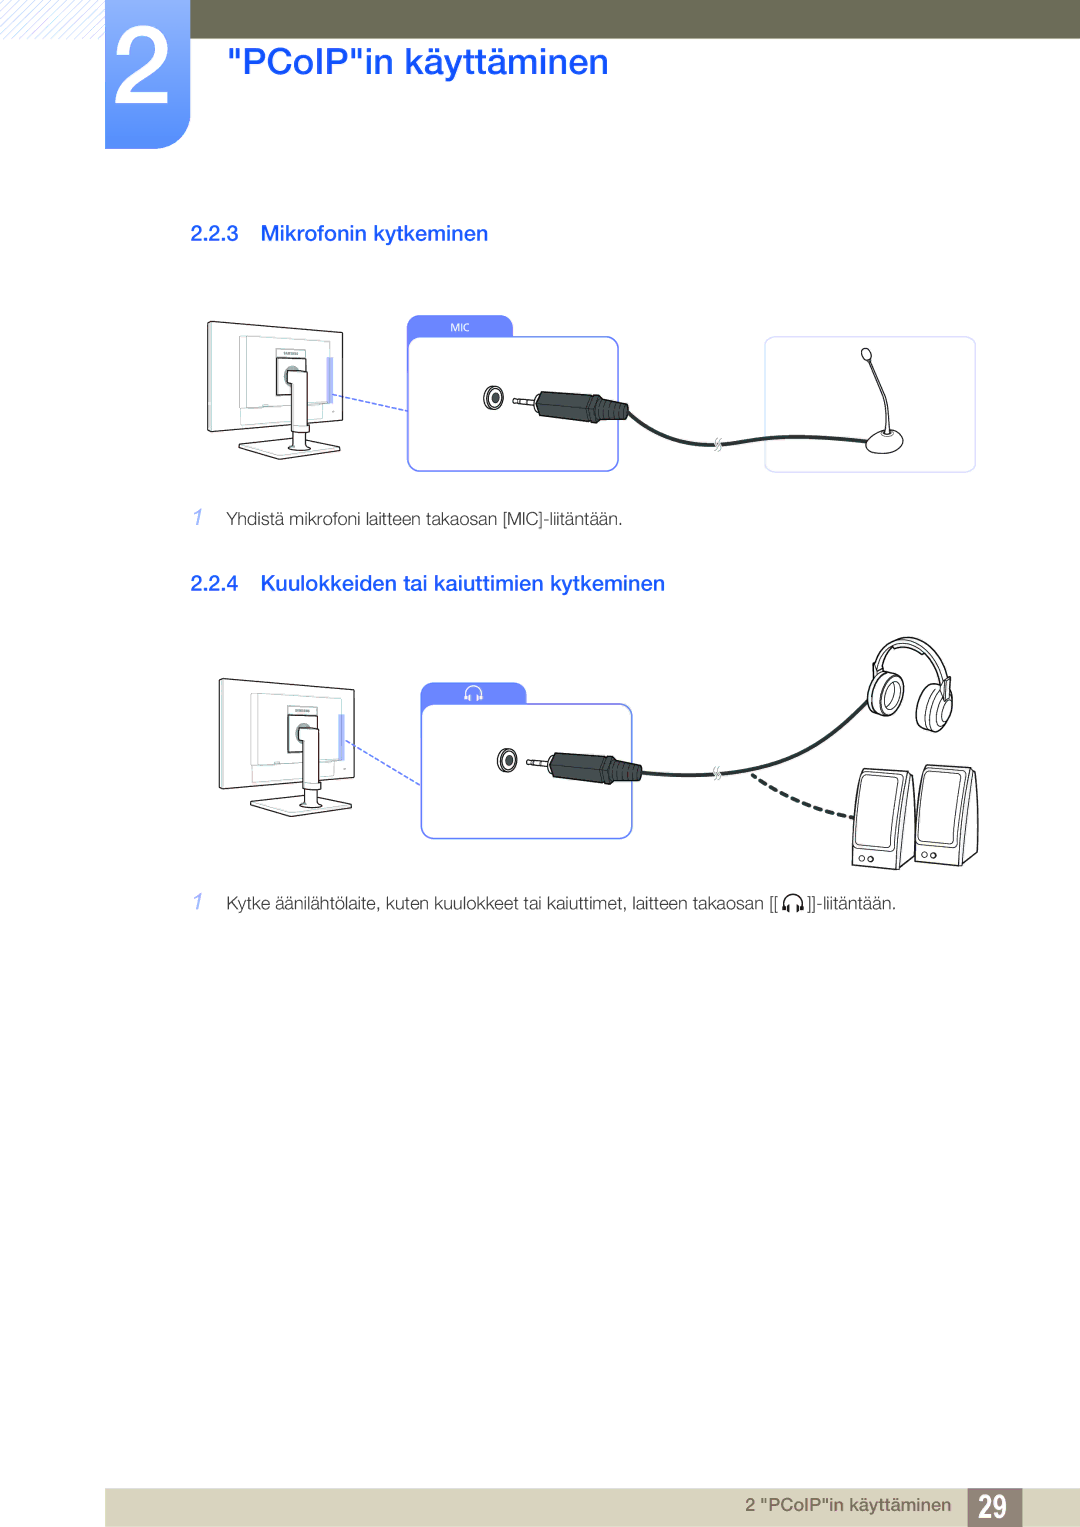 Samsung LF22NTBHBNM/EN, LF24NEBHBNU/EN, LF24NEBHBNM/EN manual Mikrofonin kytkeminen, Kuulokkeiden tai kaiuttimien kytkeminen 